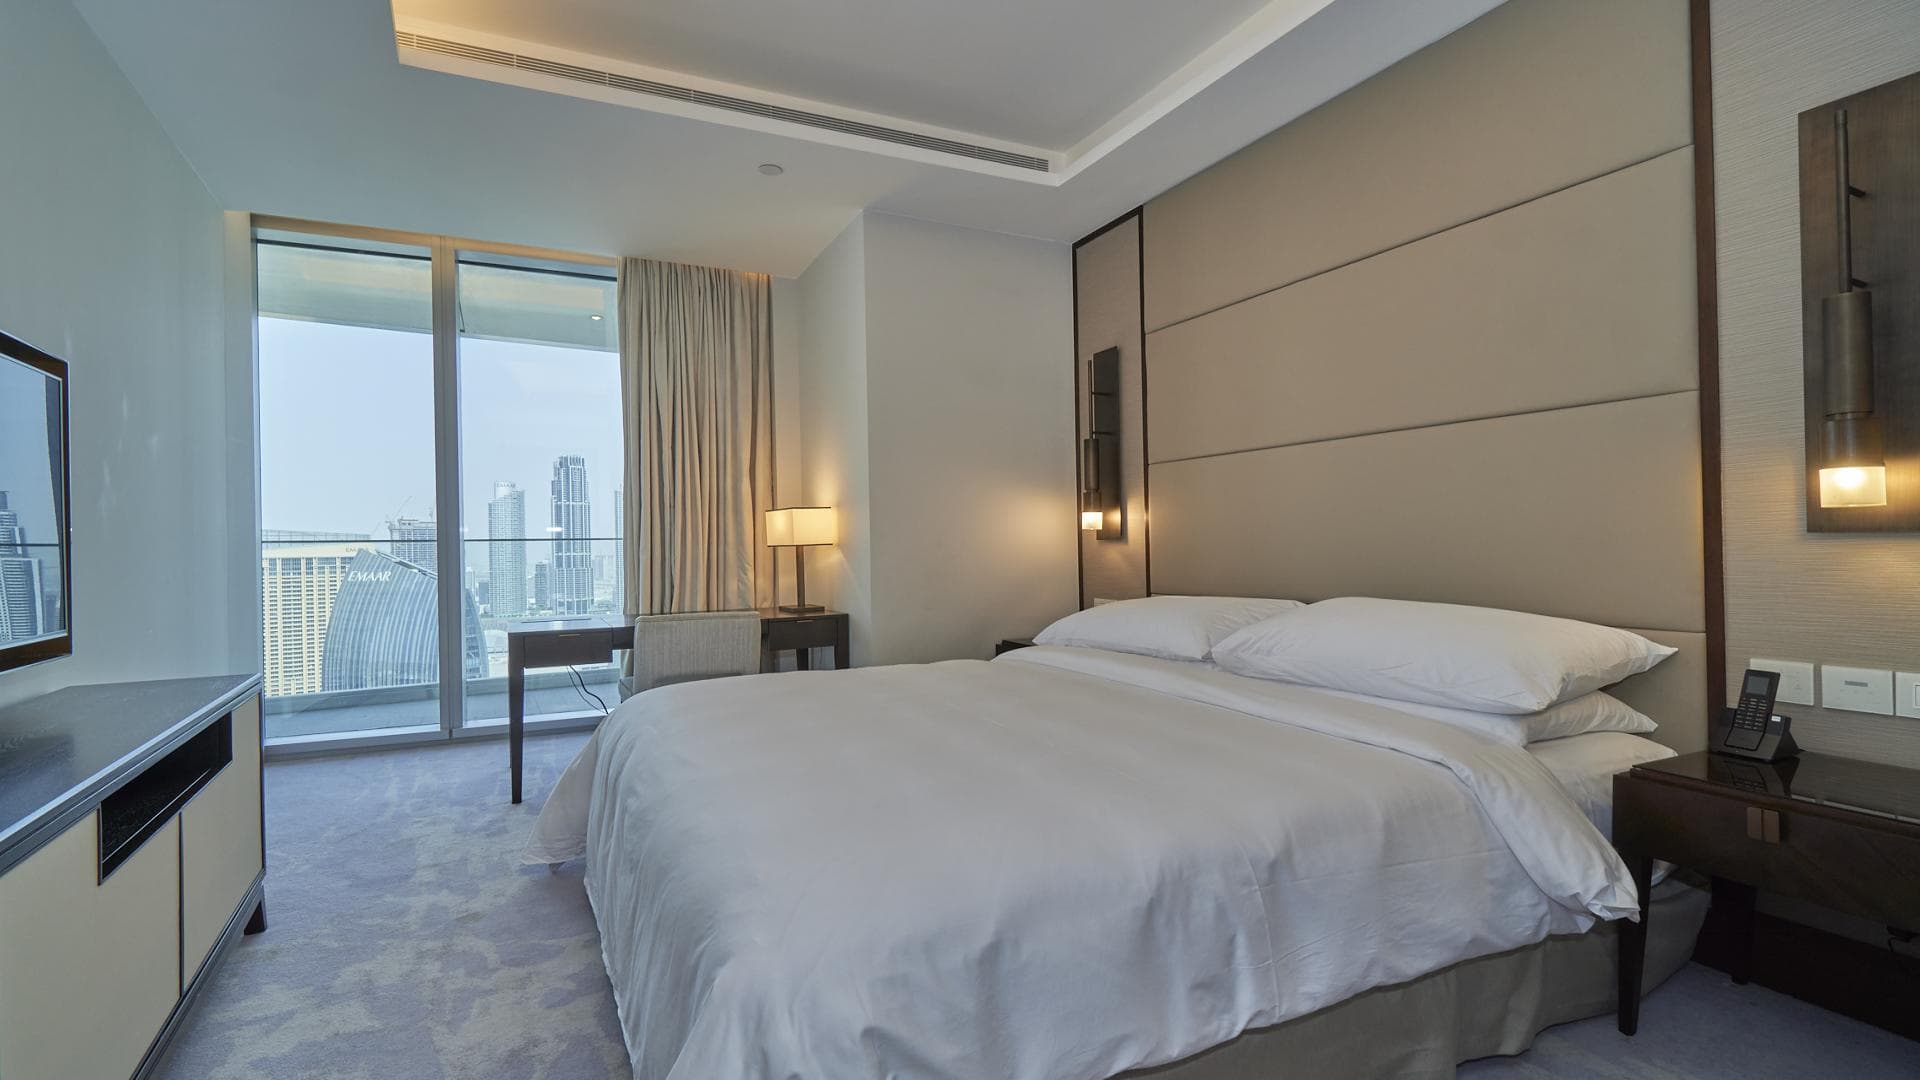 2 Bedroom Apartment For Rent Al Thamam 09 Lp36577 C8c0c082359fd00.jpg